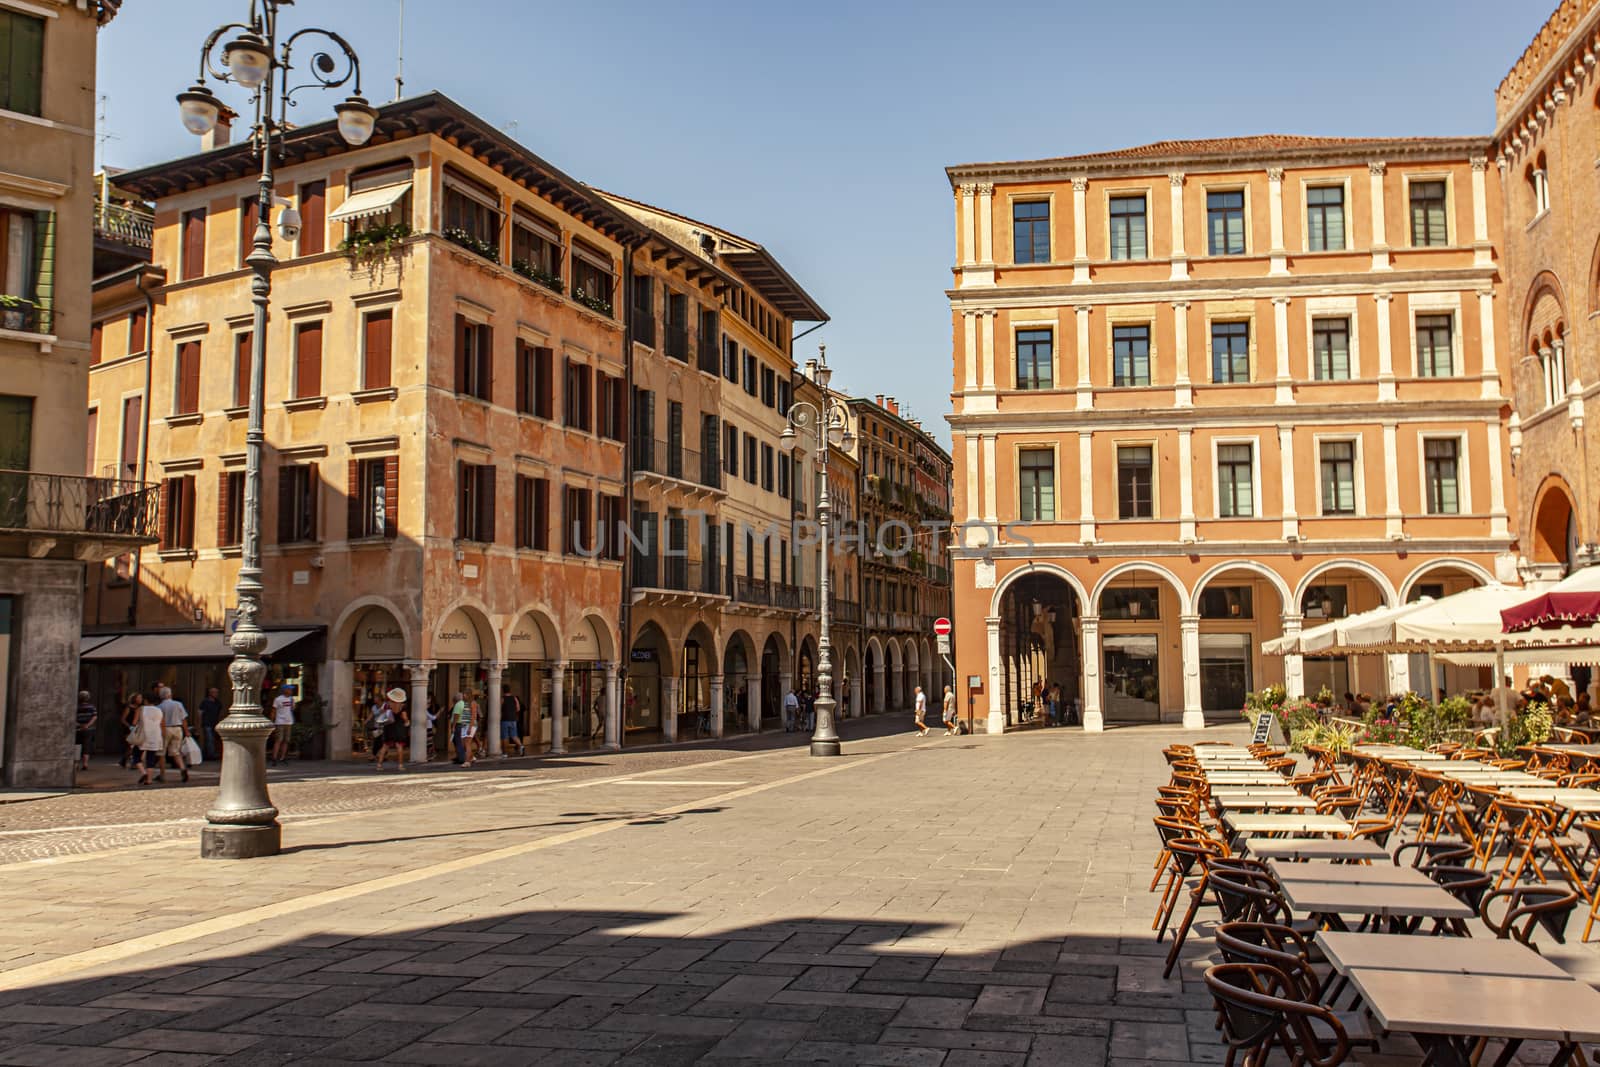 Piazza dei Signori in Treviso in Italy 12 by pippocarlot